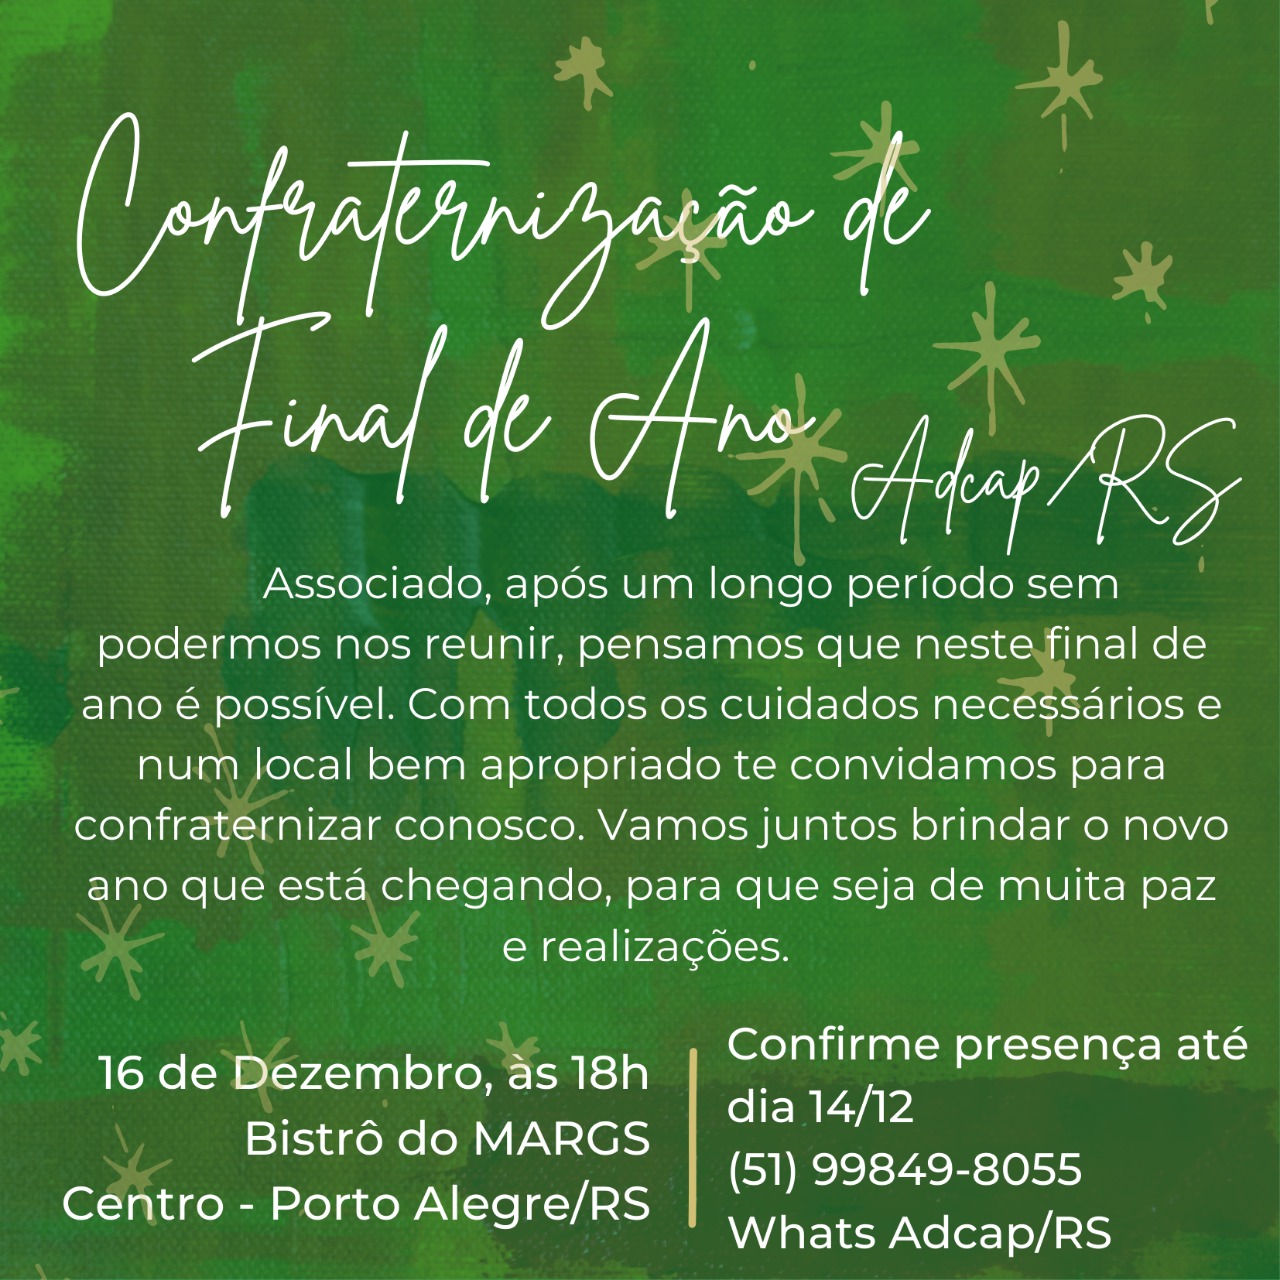 You are currently viewing Confraternização ADCAP/RS – 16/12 no Bistrô do MARGS